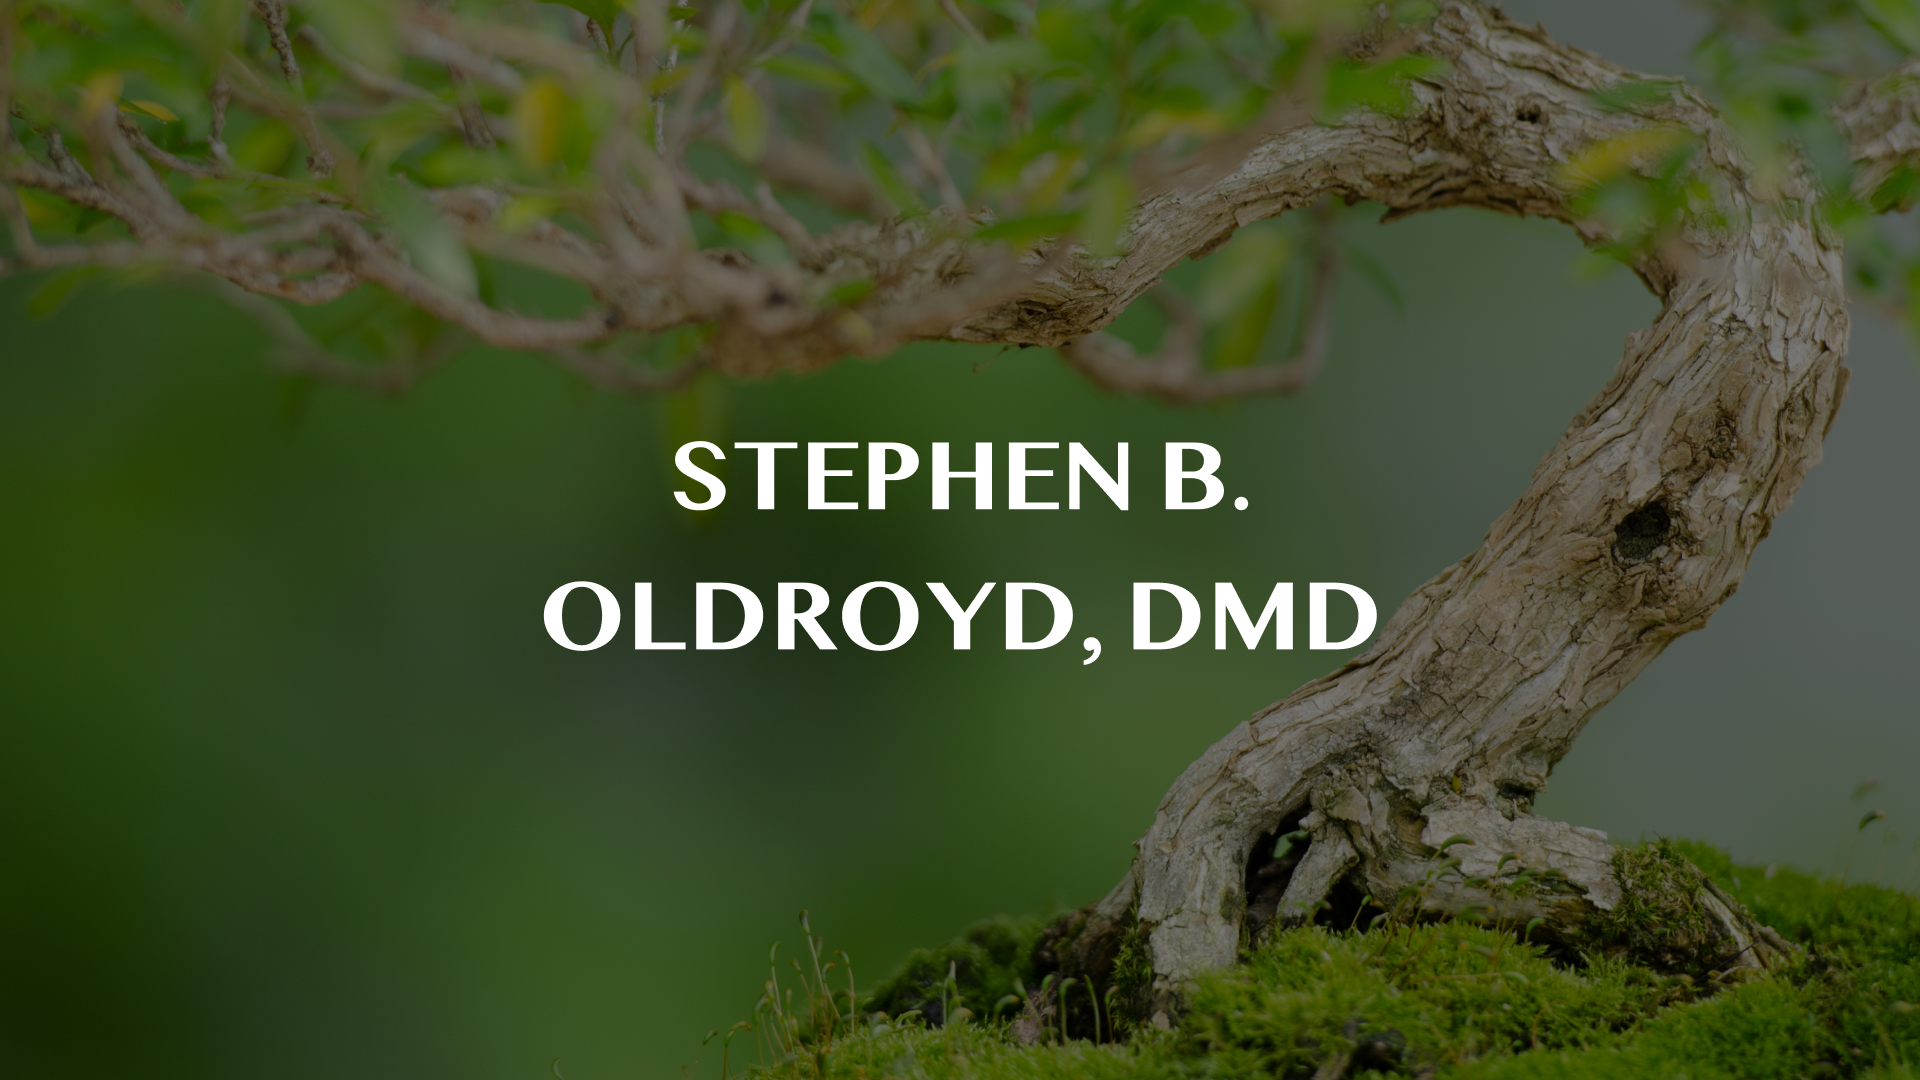 Stephen B. Oldroyd, DMD